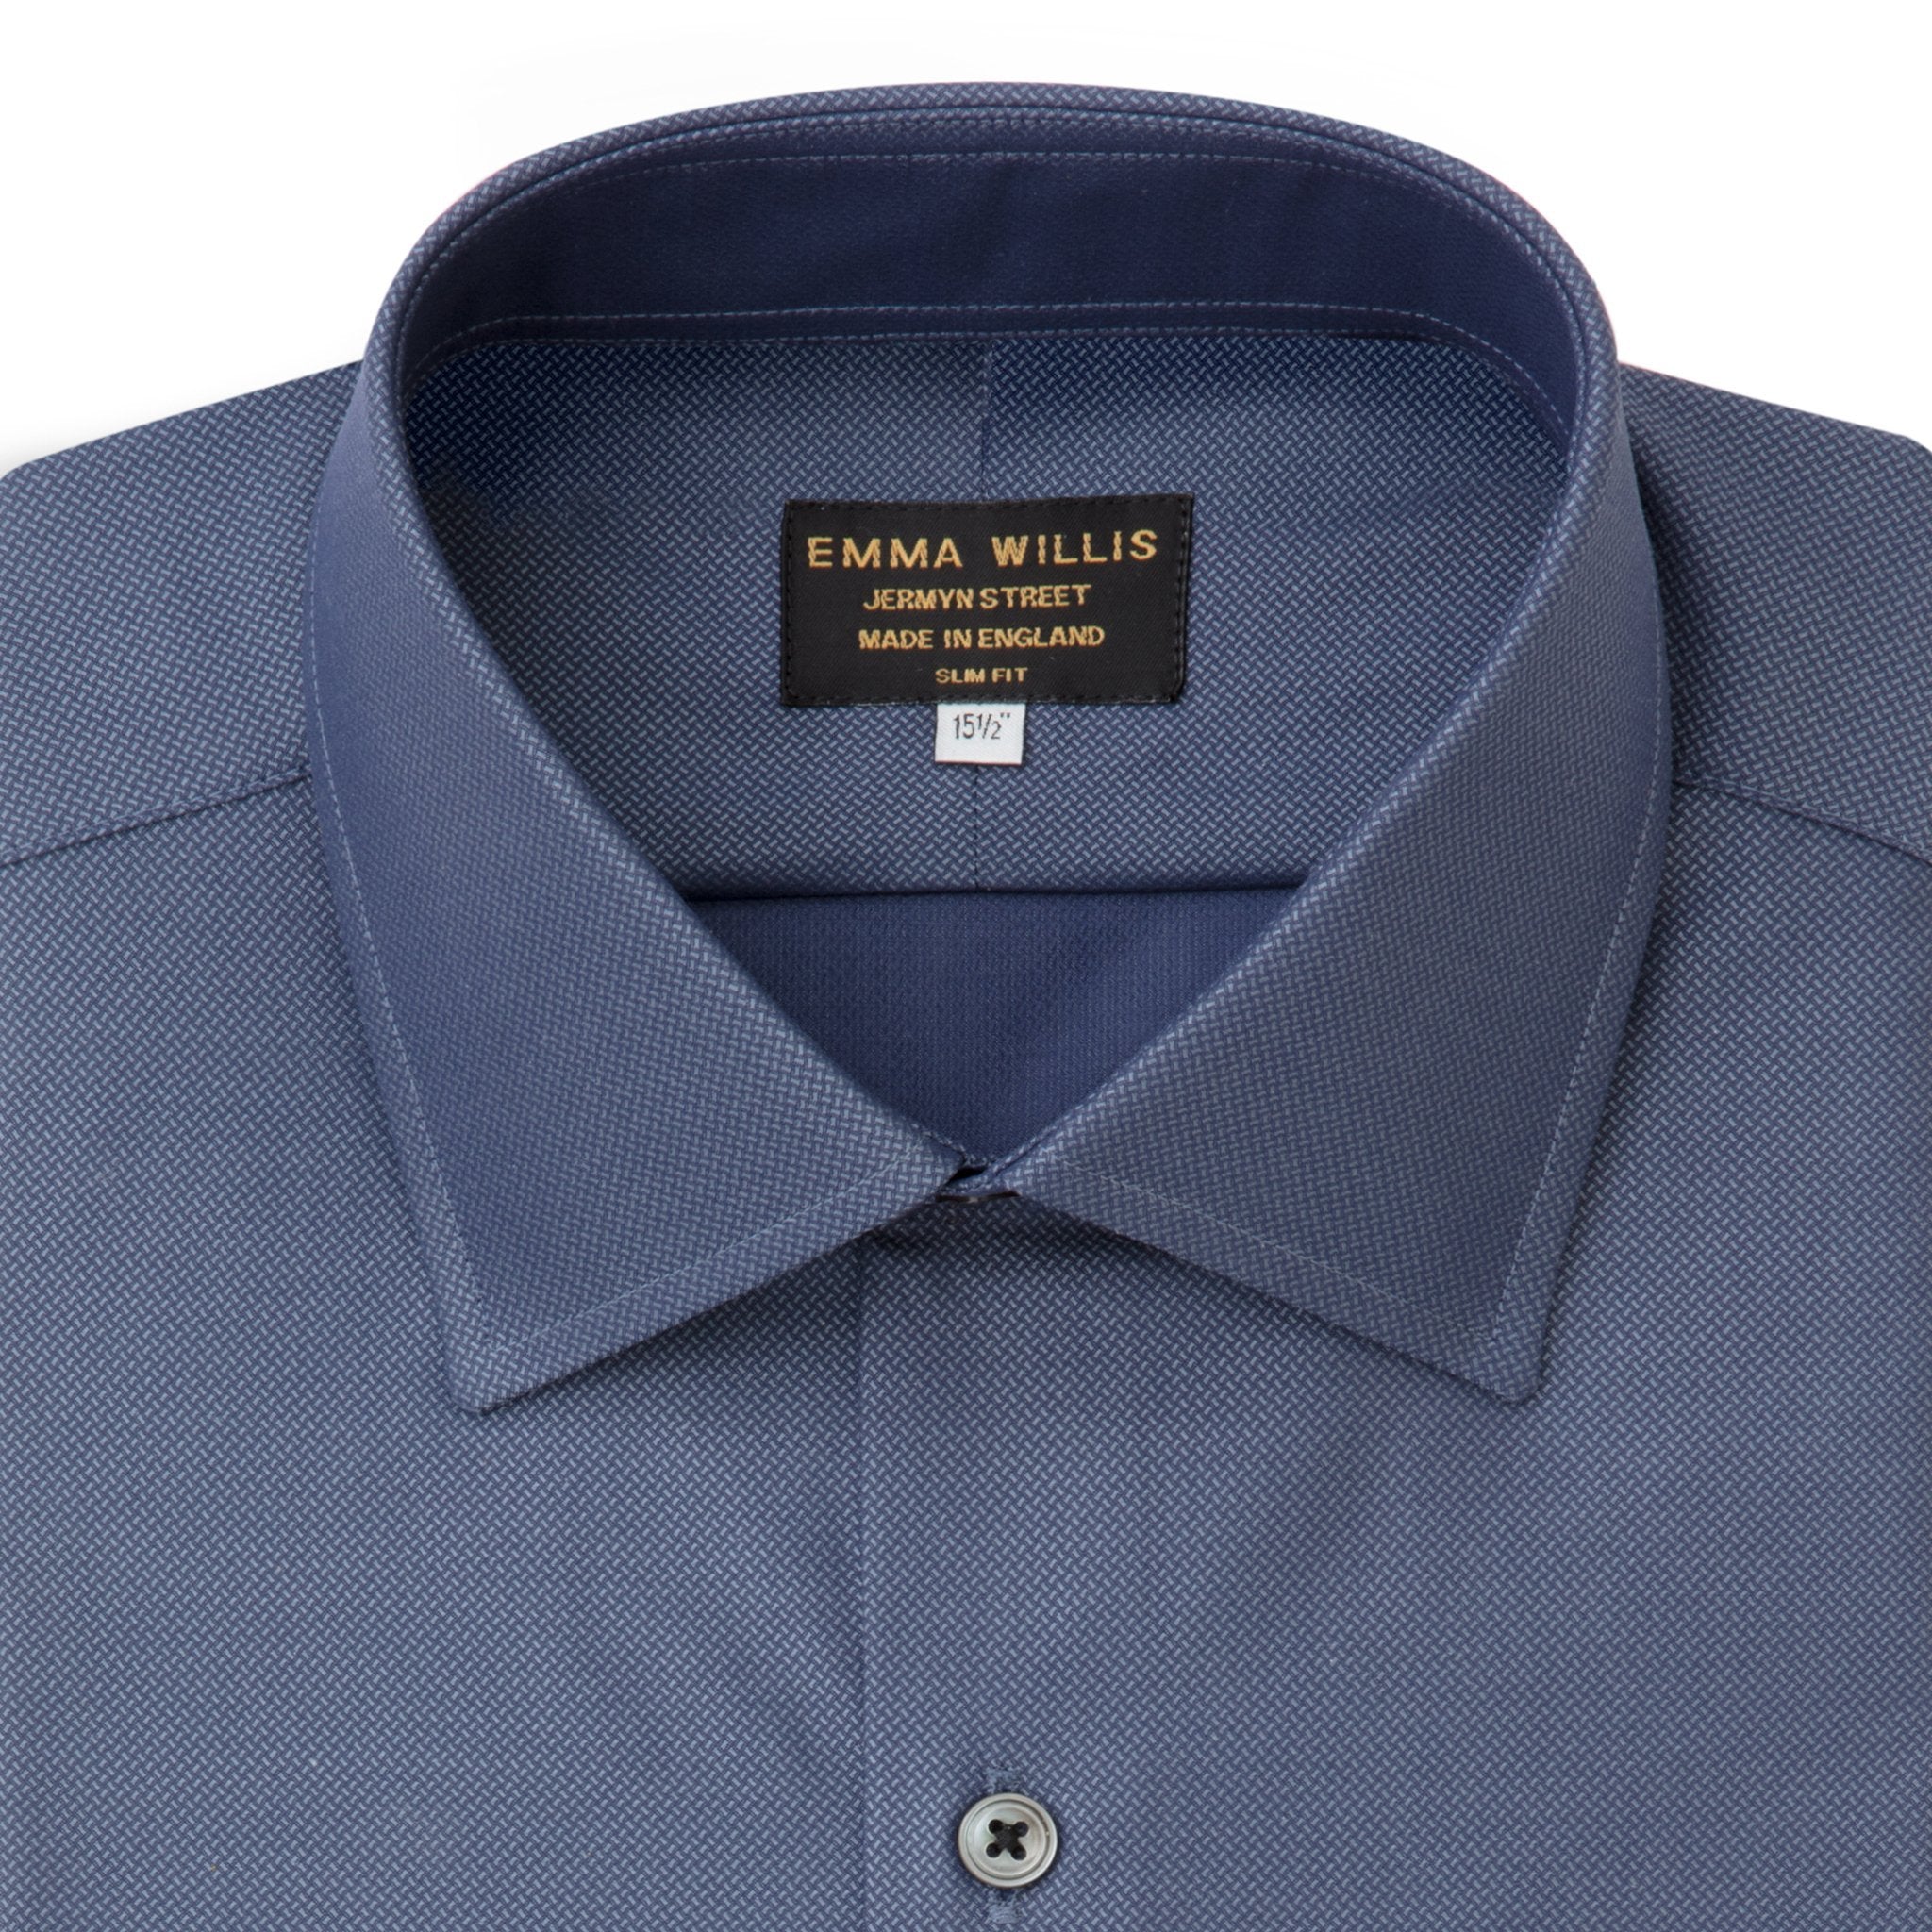 Navy Chambray Twill Cotton Shirt - Bespoke Pattern freeshipping - Emma Willis